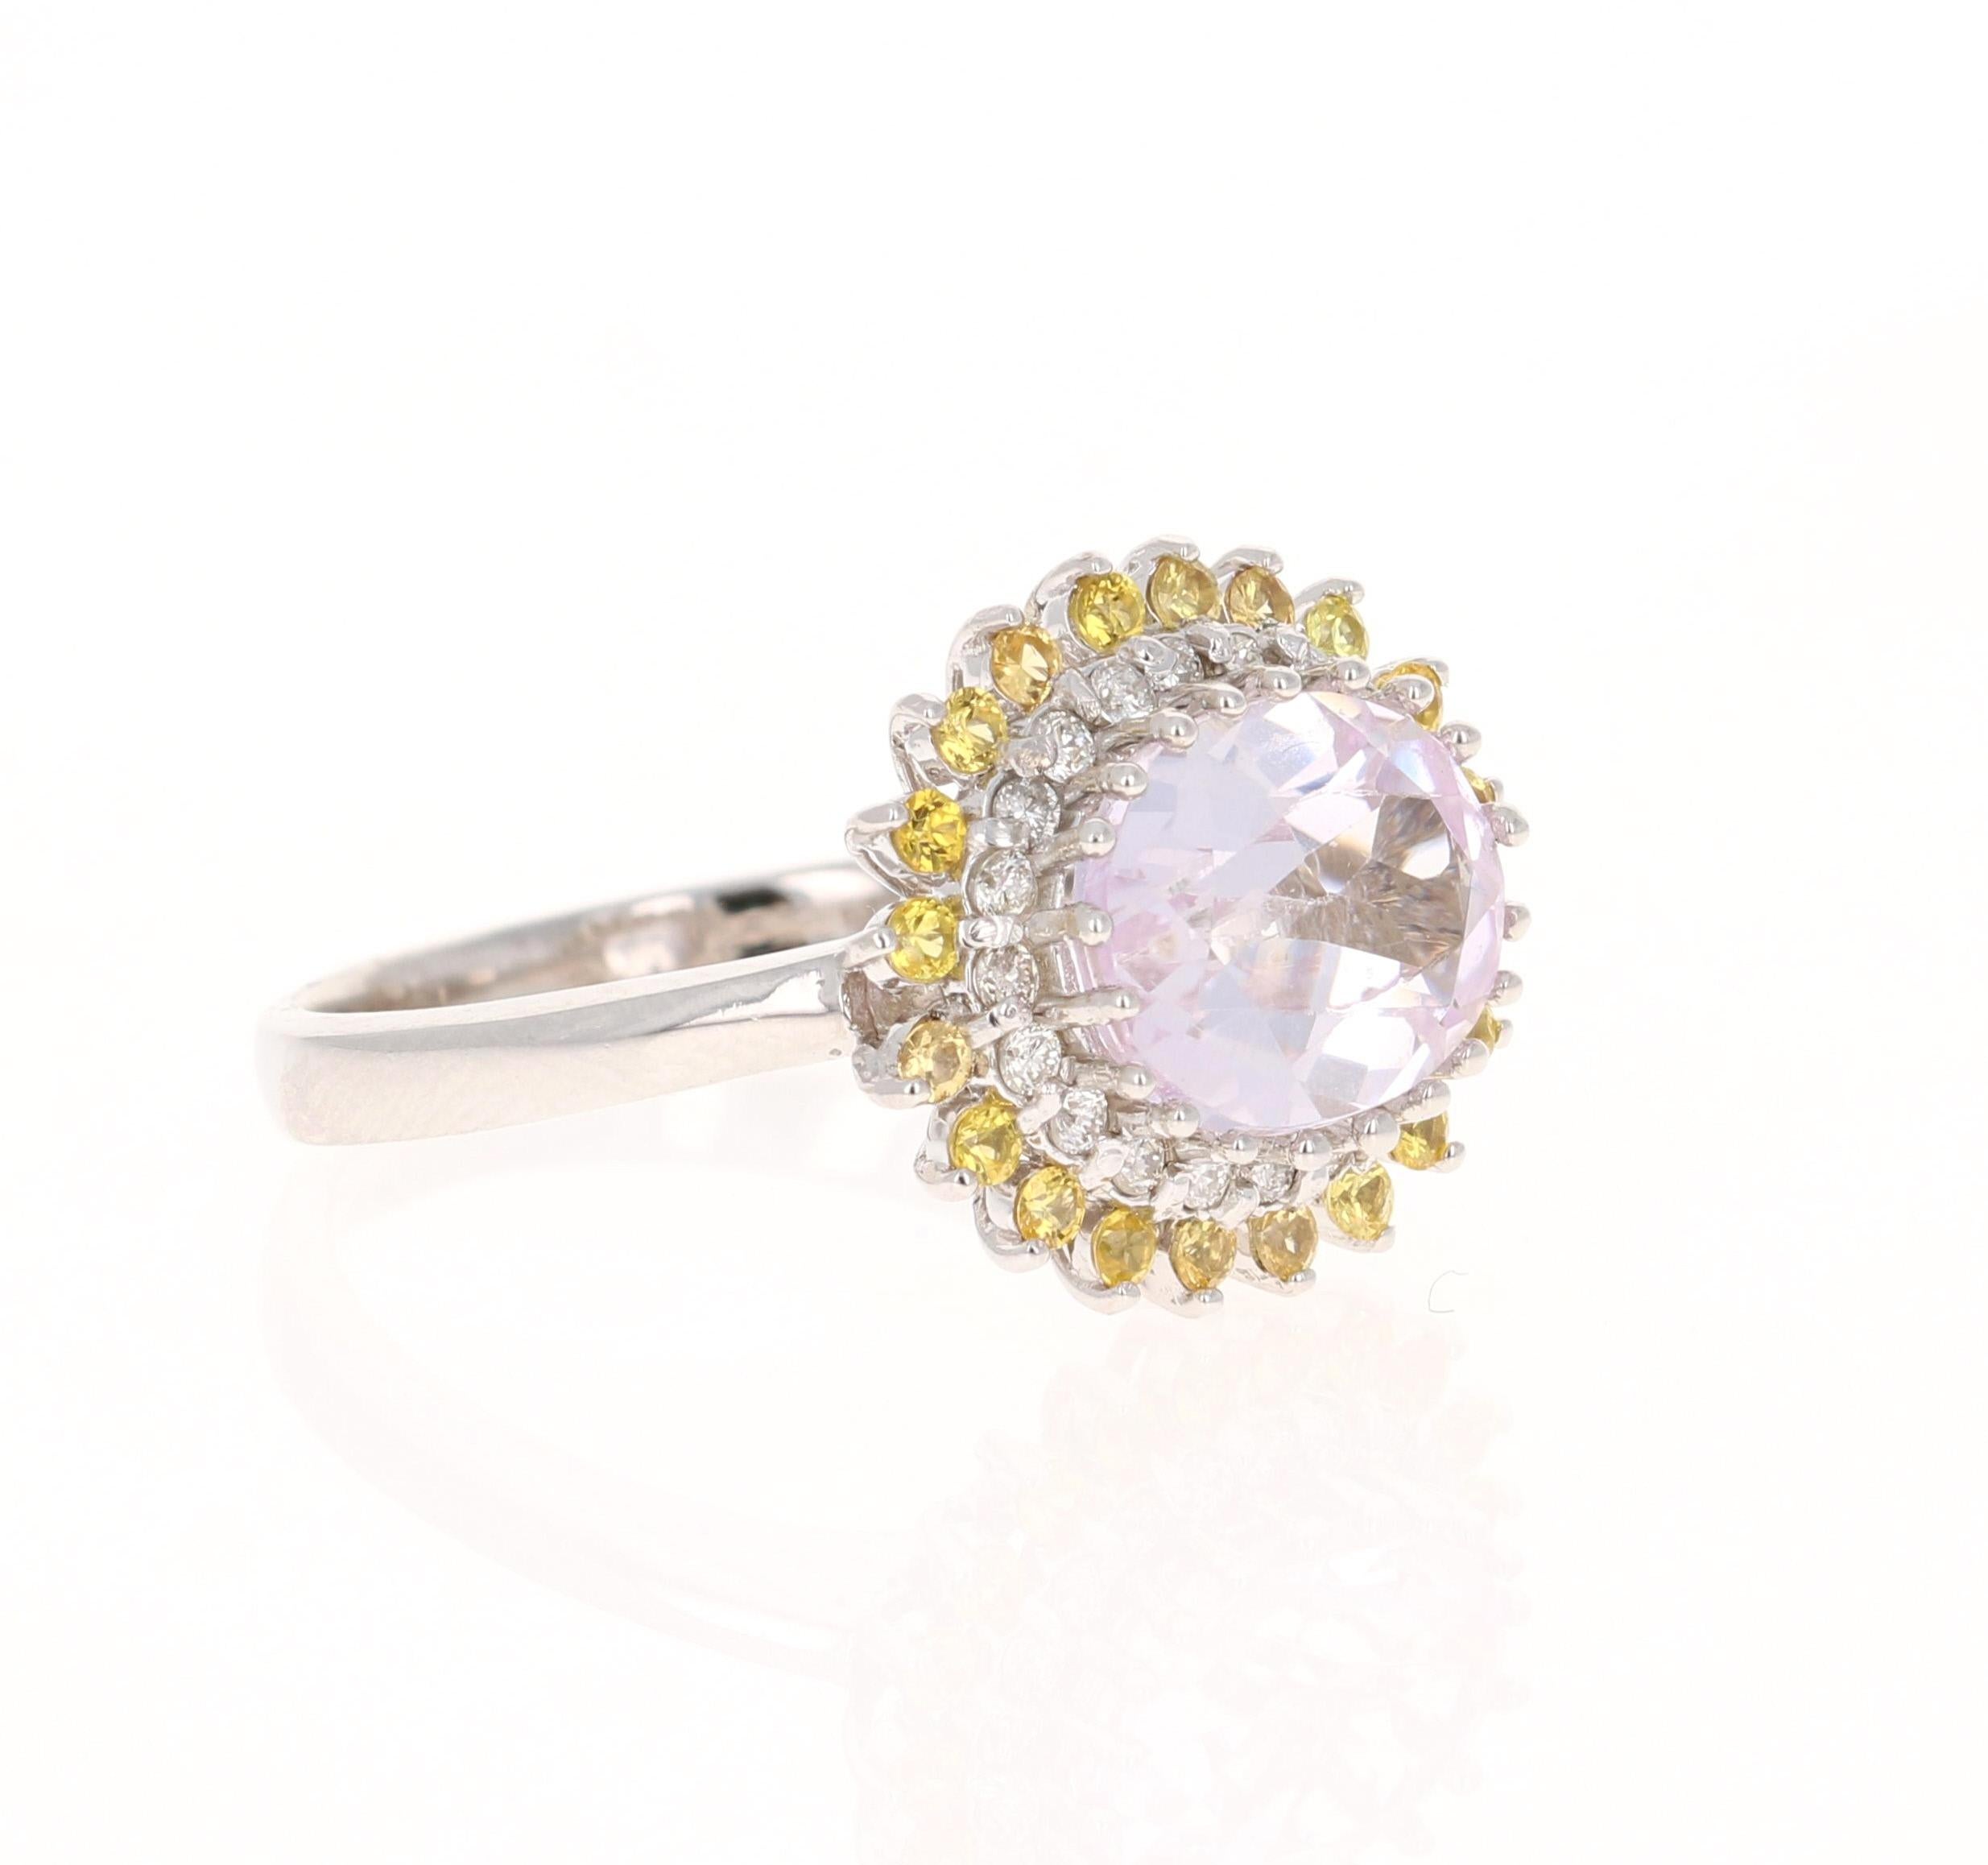 Dieser Ring hat eine Oval Cut Light Pink Kunzite, die 3,02 Karat wiegt und misst bei 8 mm x 10 mm. Er ist umgeben von 20 gelben Saphiren mit einem Gewicht von 0,39 Karat und 20 Diamanten im Rundschliff mit einem Gewicht von 0,21 Karat. (Reinheit: